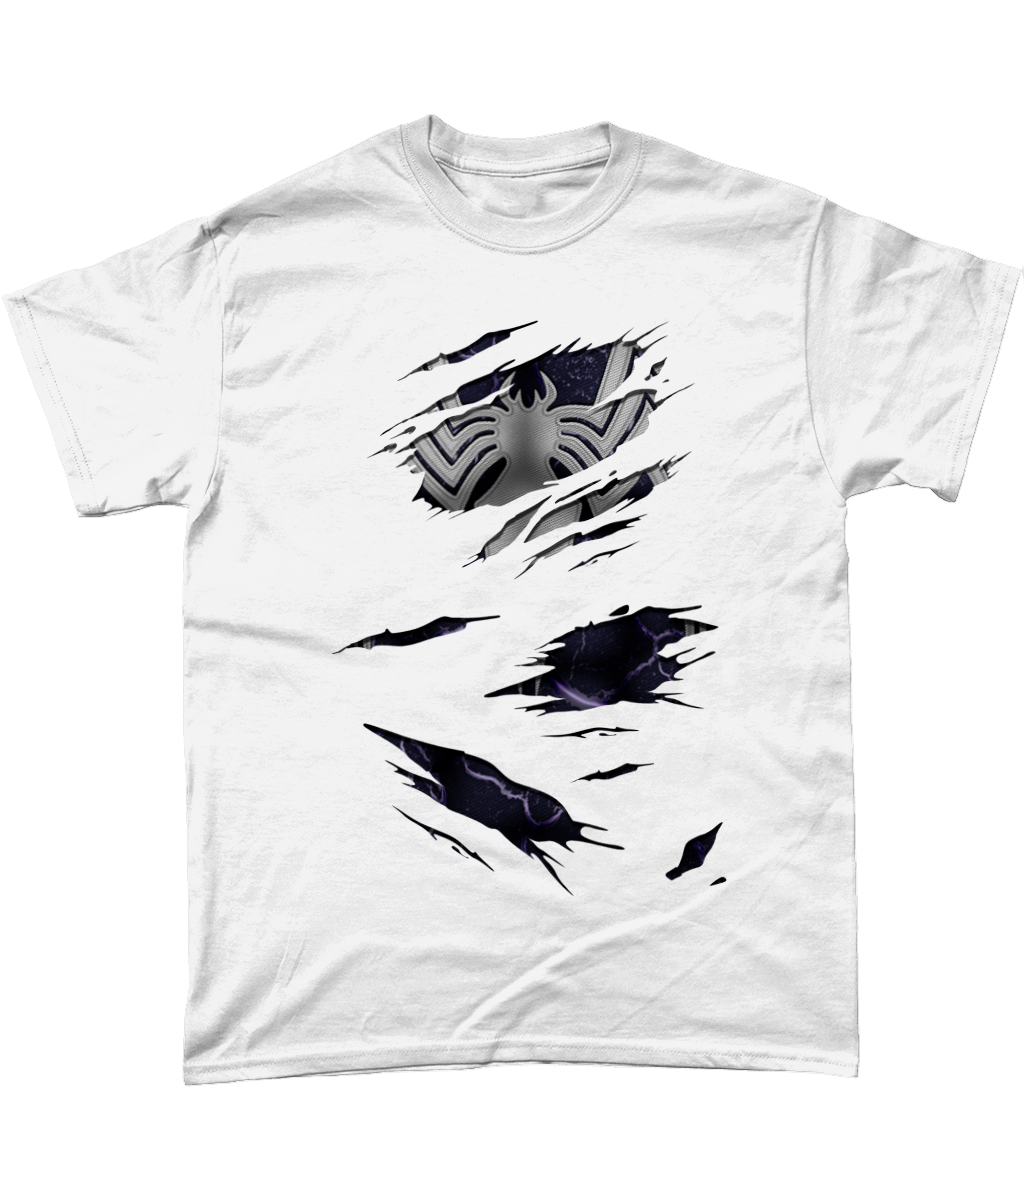 Venom Torn T-Shirt